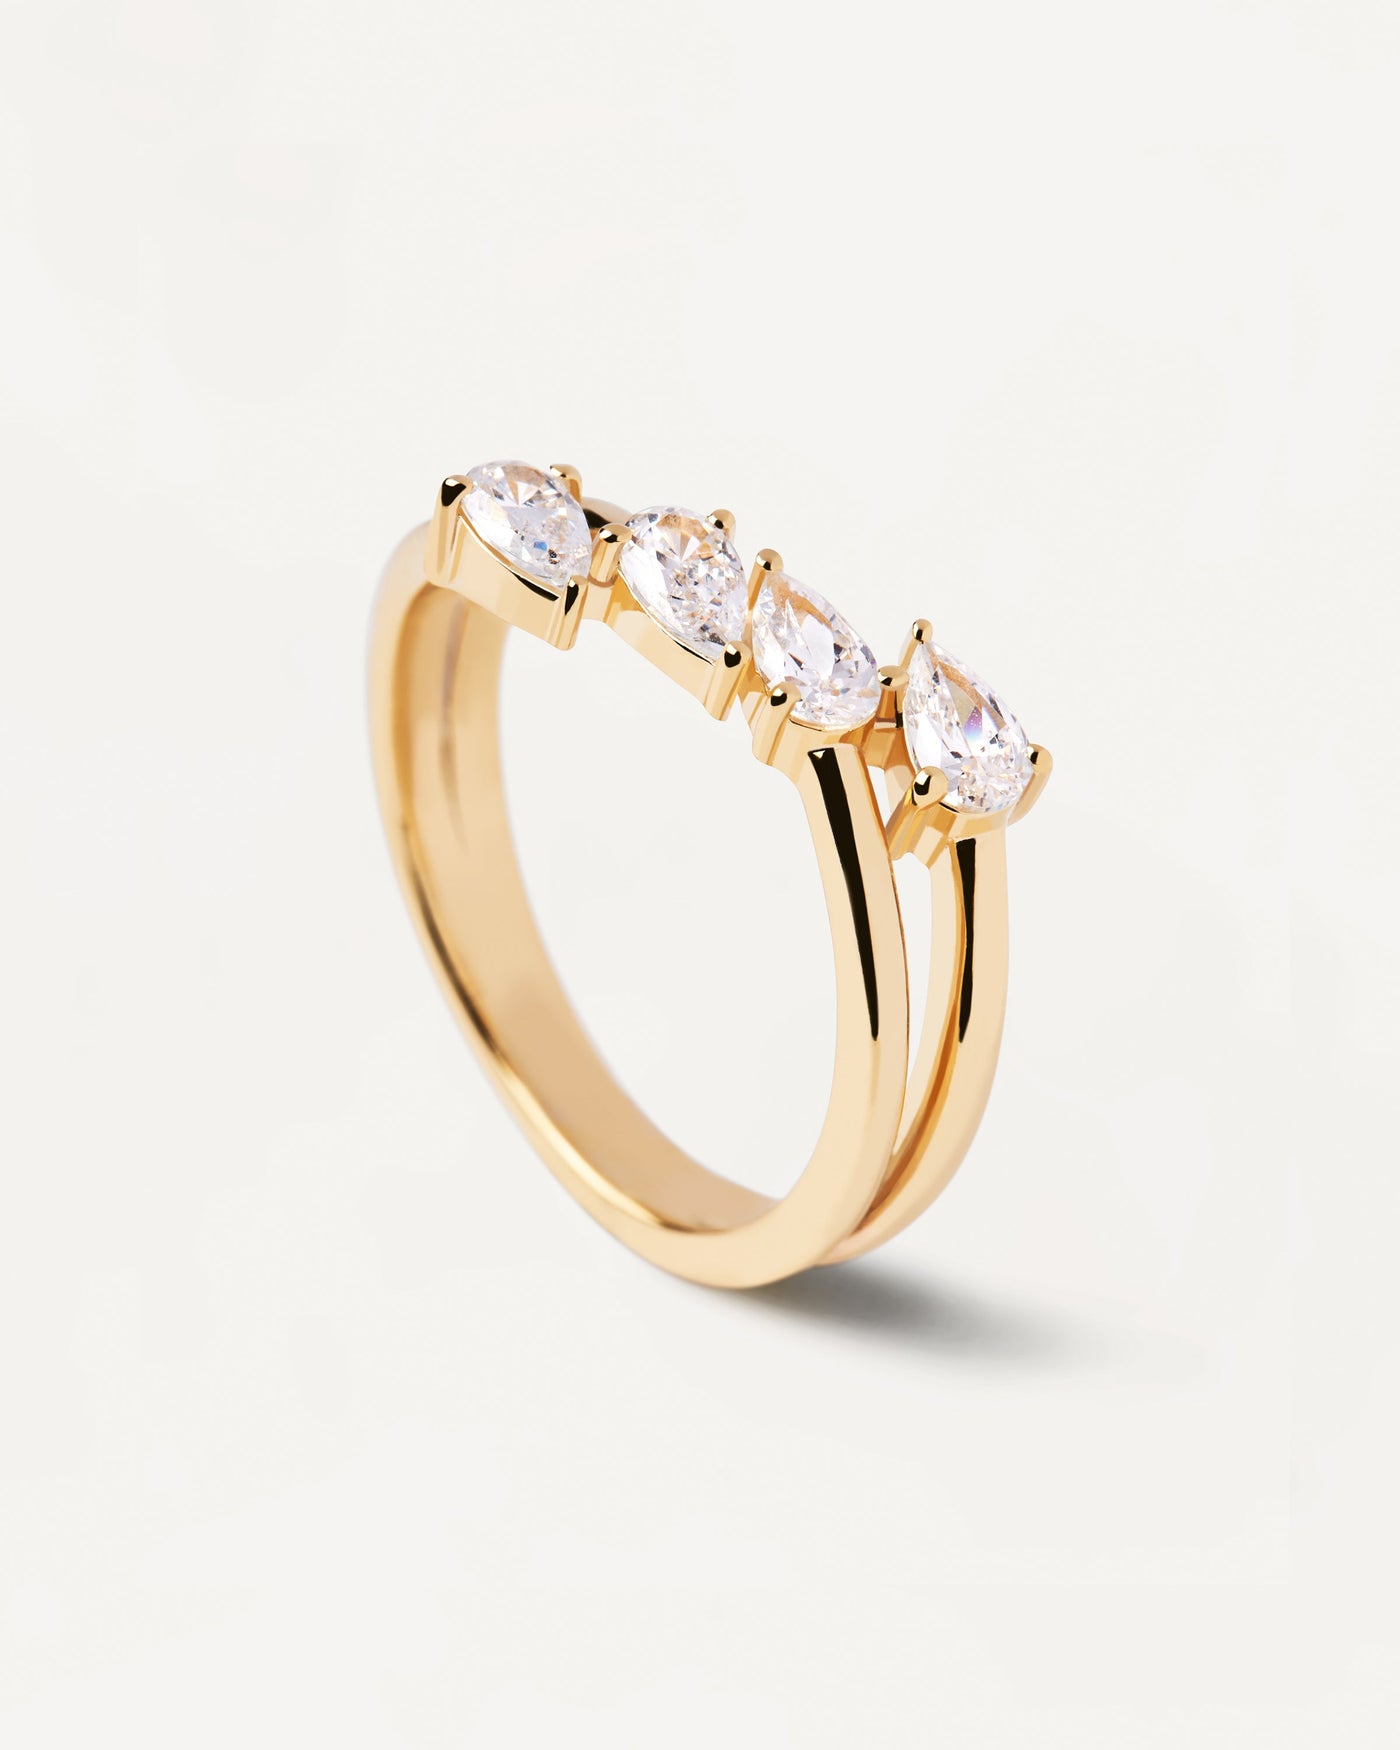 Terra Ring. Vergoldeter Silberring mit großen weißen Zirkonias. Erhalten Sie die neuesten Produkte von PDPAOLA. Geben Sie Ihre Bestellung sicher auf und erhalten Sie diesen Bestseller.